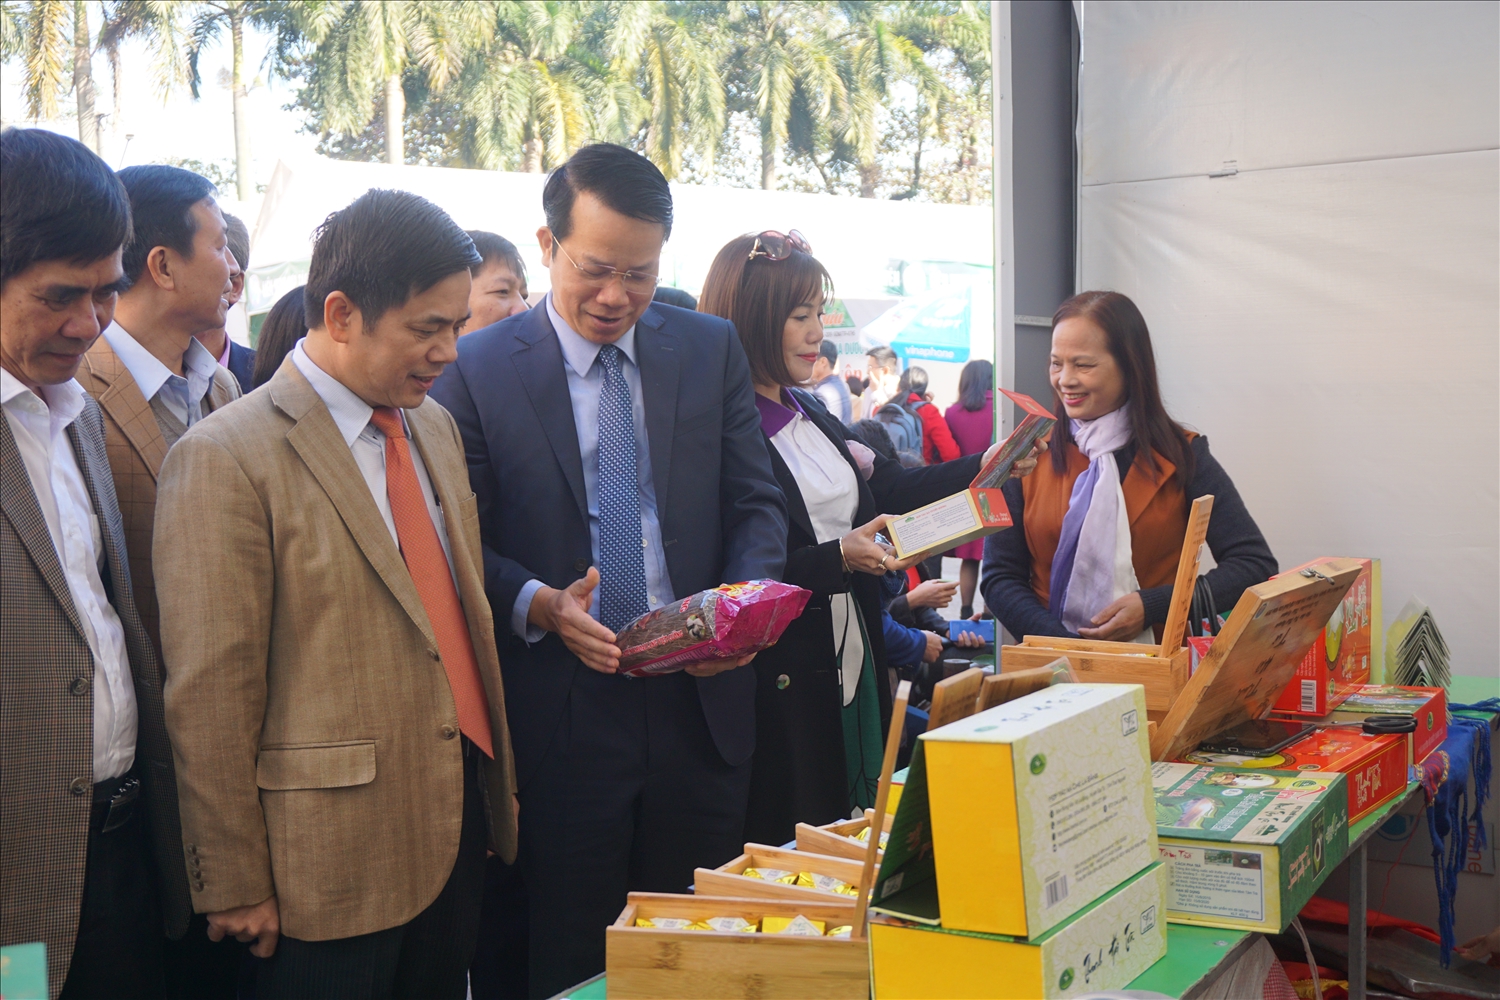 Ông Dương Văn Lượng, Phó Chủ tịch UBND tỉnh Thái Nguyên tham quan một gian hàng trưng bày giới thiệu sản phẩm (Ảnh: Liên minh HTX tỉnh Thái Nguyên)